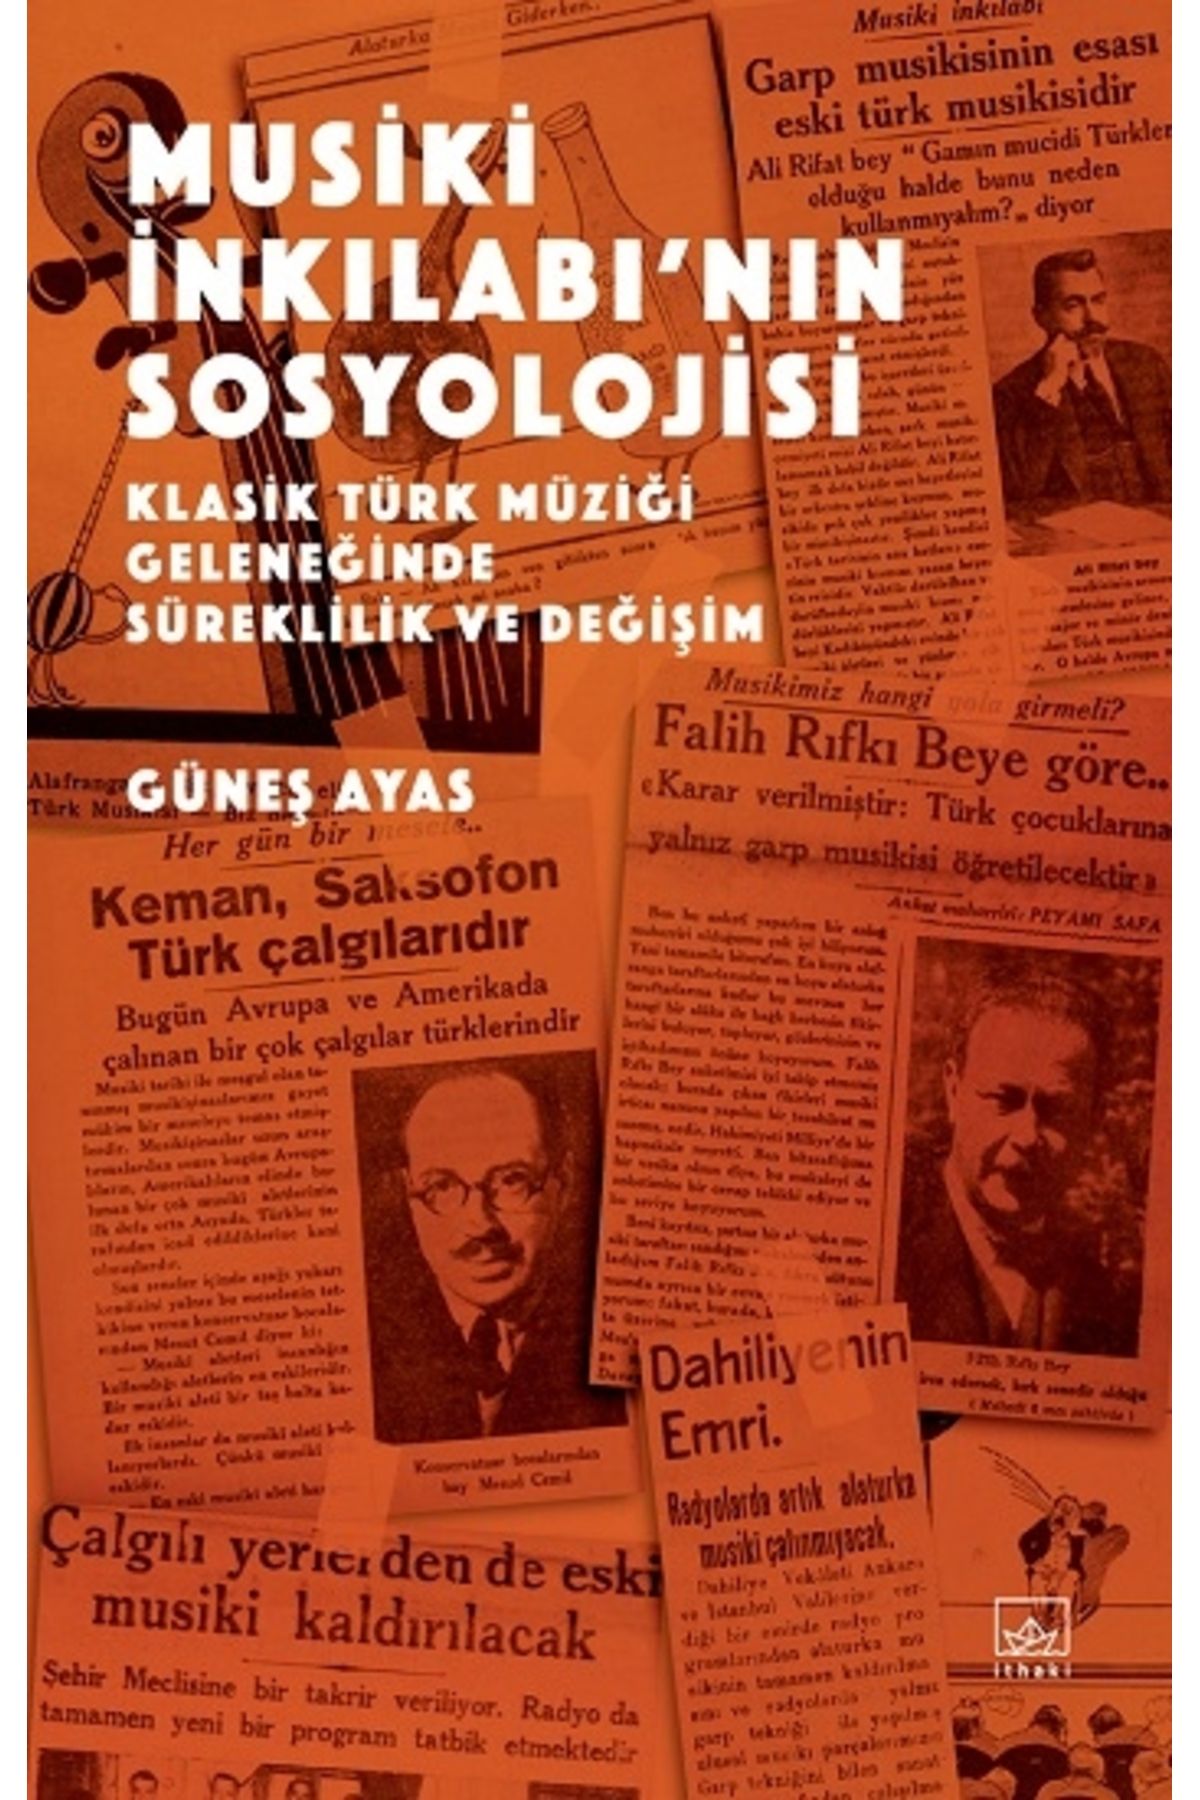 İthaki Yayınları Musiki İnkılabı’nın Sosyolojisi